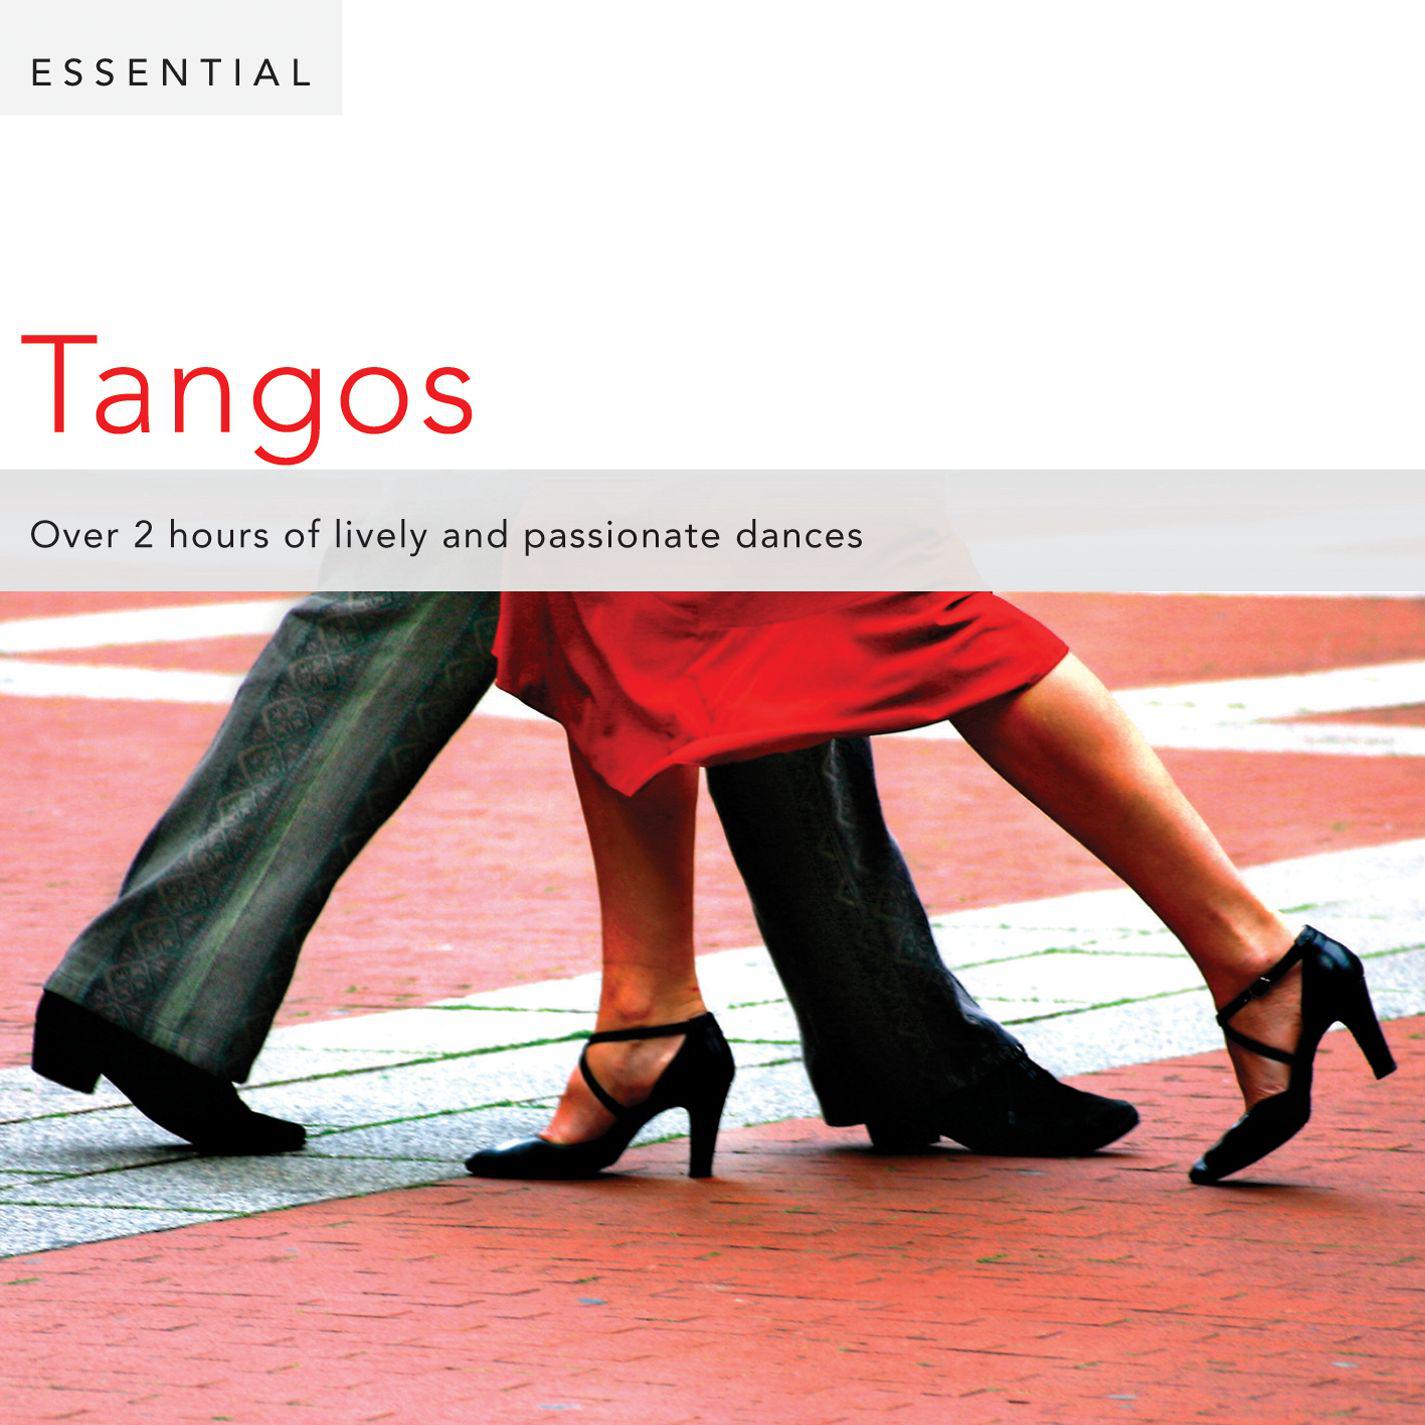 Histoire du tango:Bordel 1900